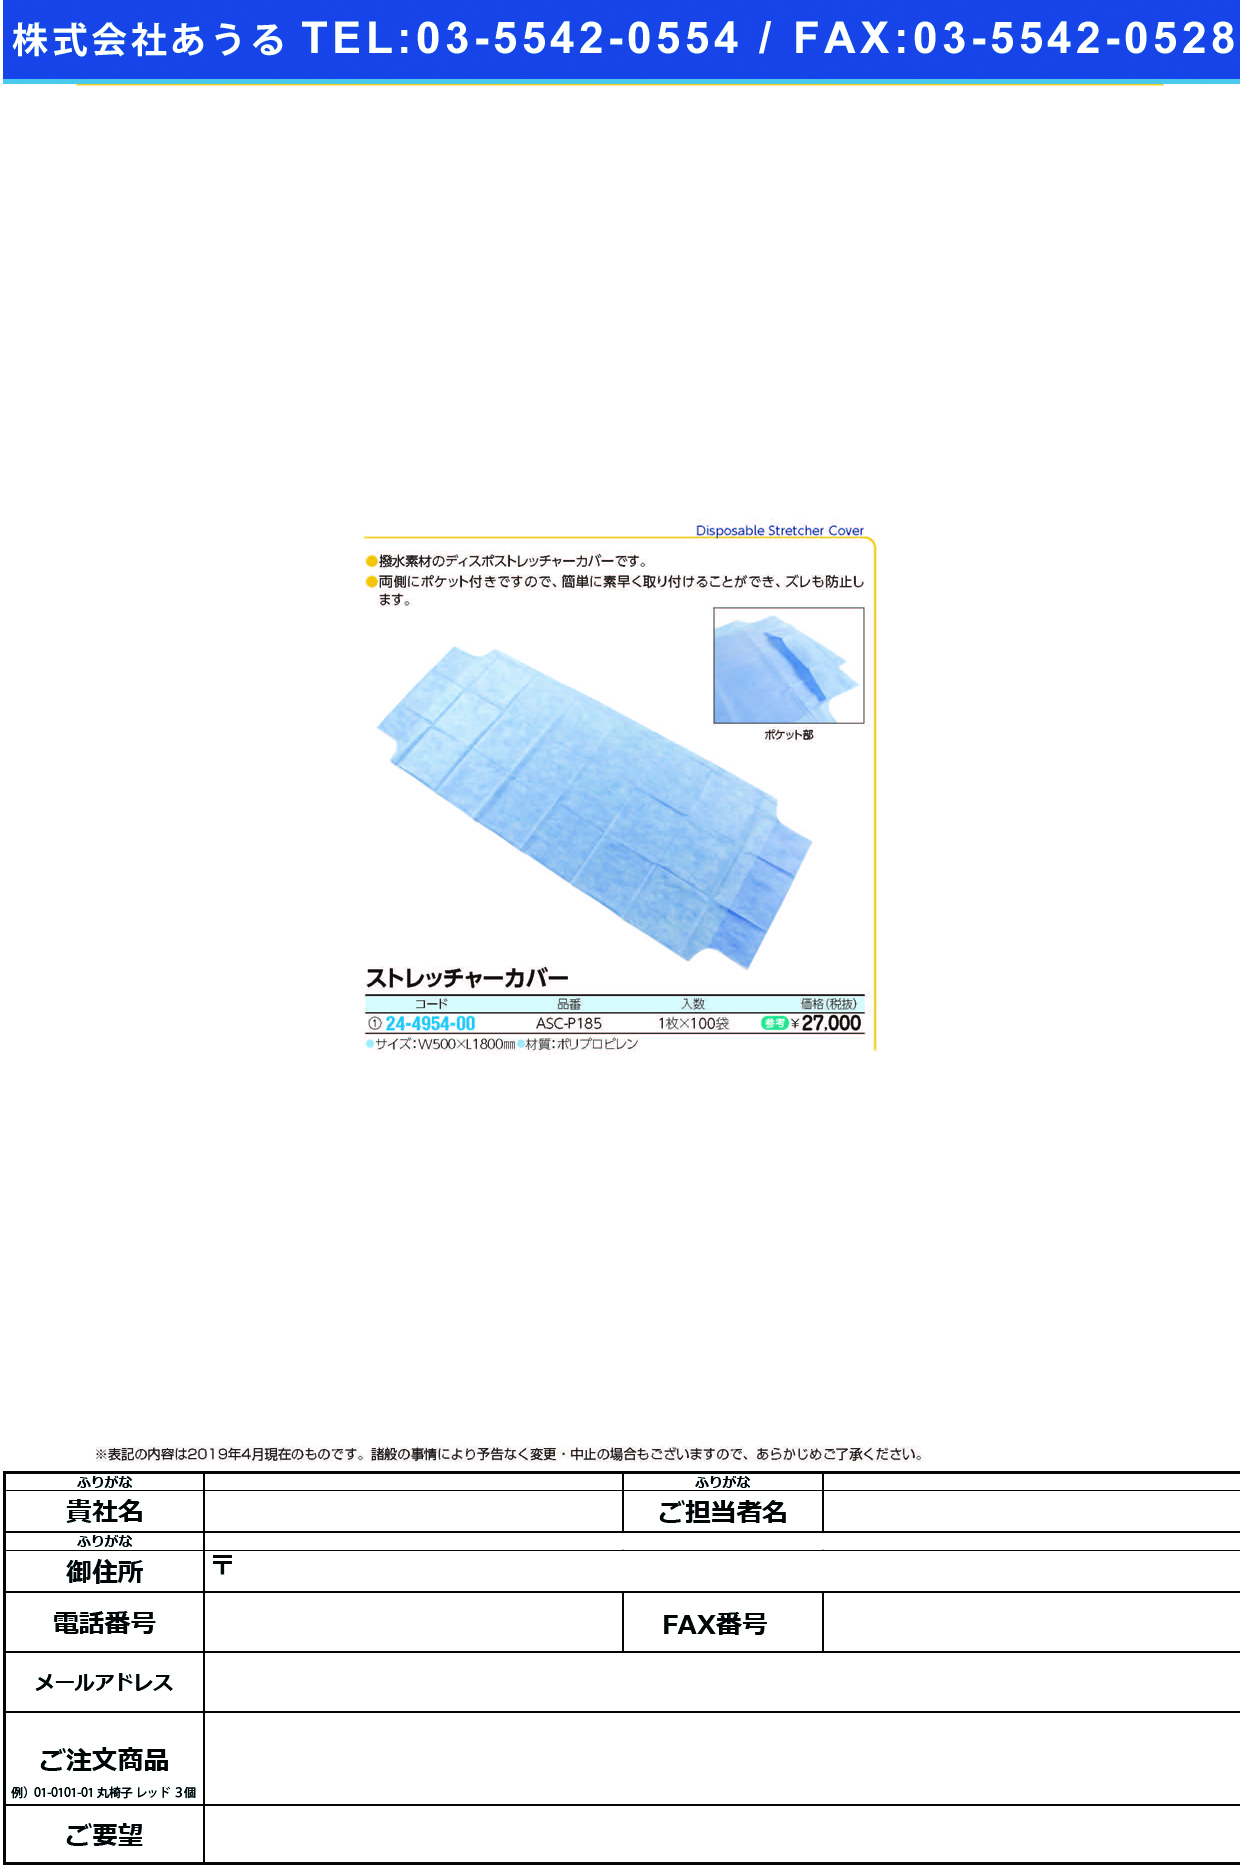 (24-4954-00)ストレッチャーカバー ASC-P185(1ﾏｲX100ﾌｸﾛ) ｽﾄﾚｯﾁｬｰｶﾊﾞｰ【1箱単位】【2019年カタログ商品】